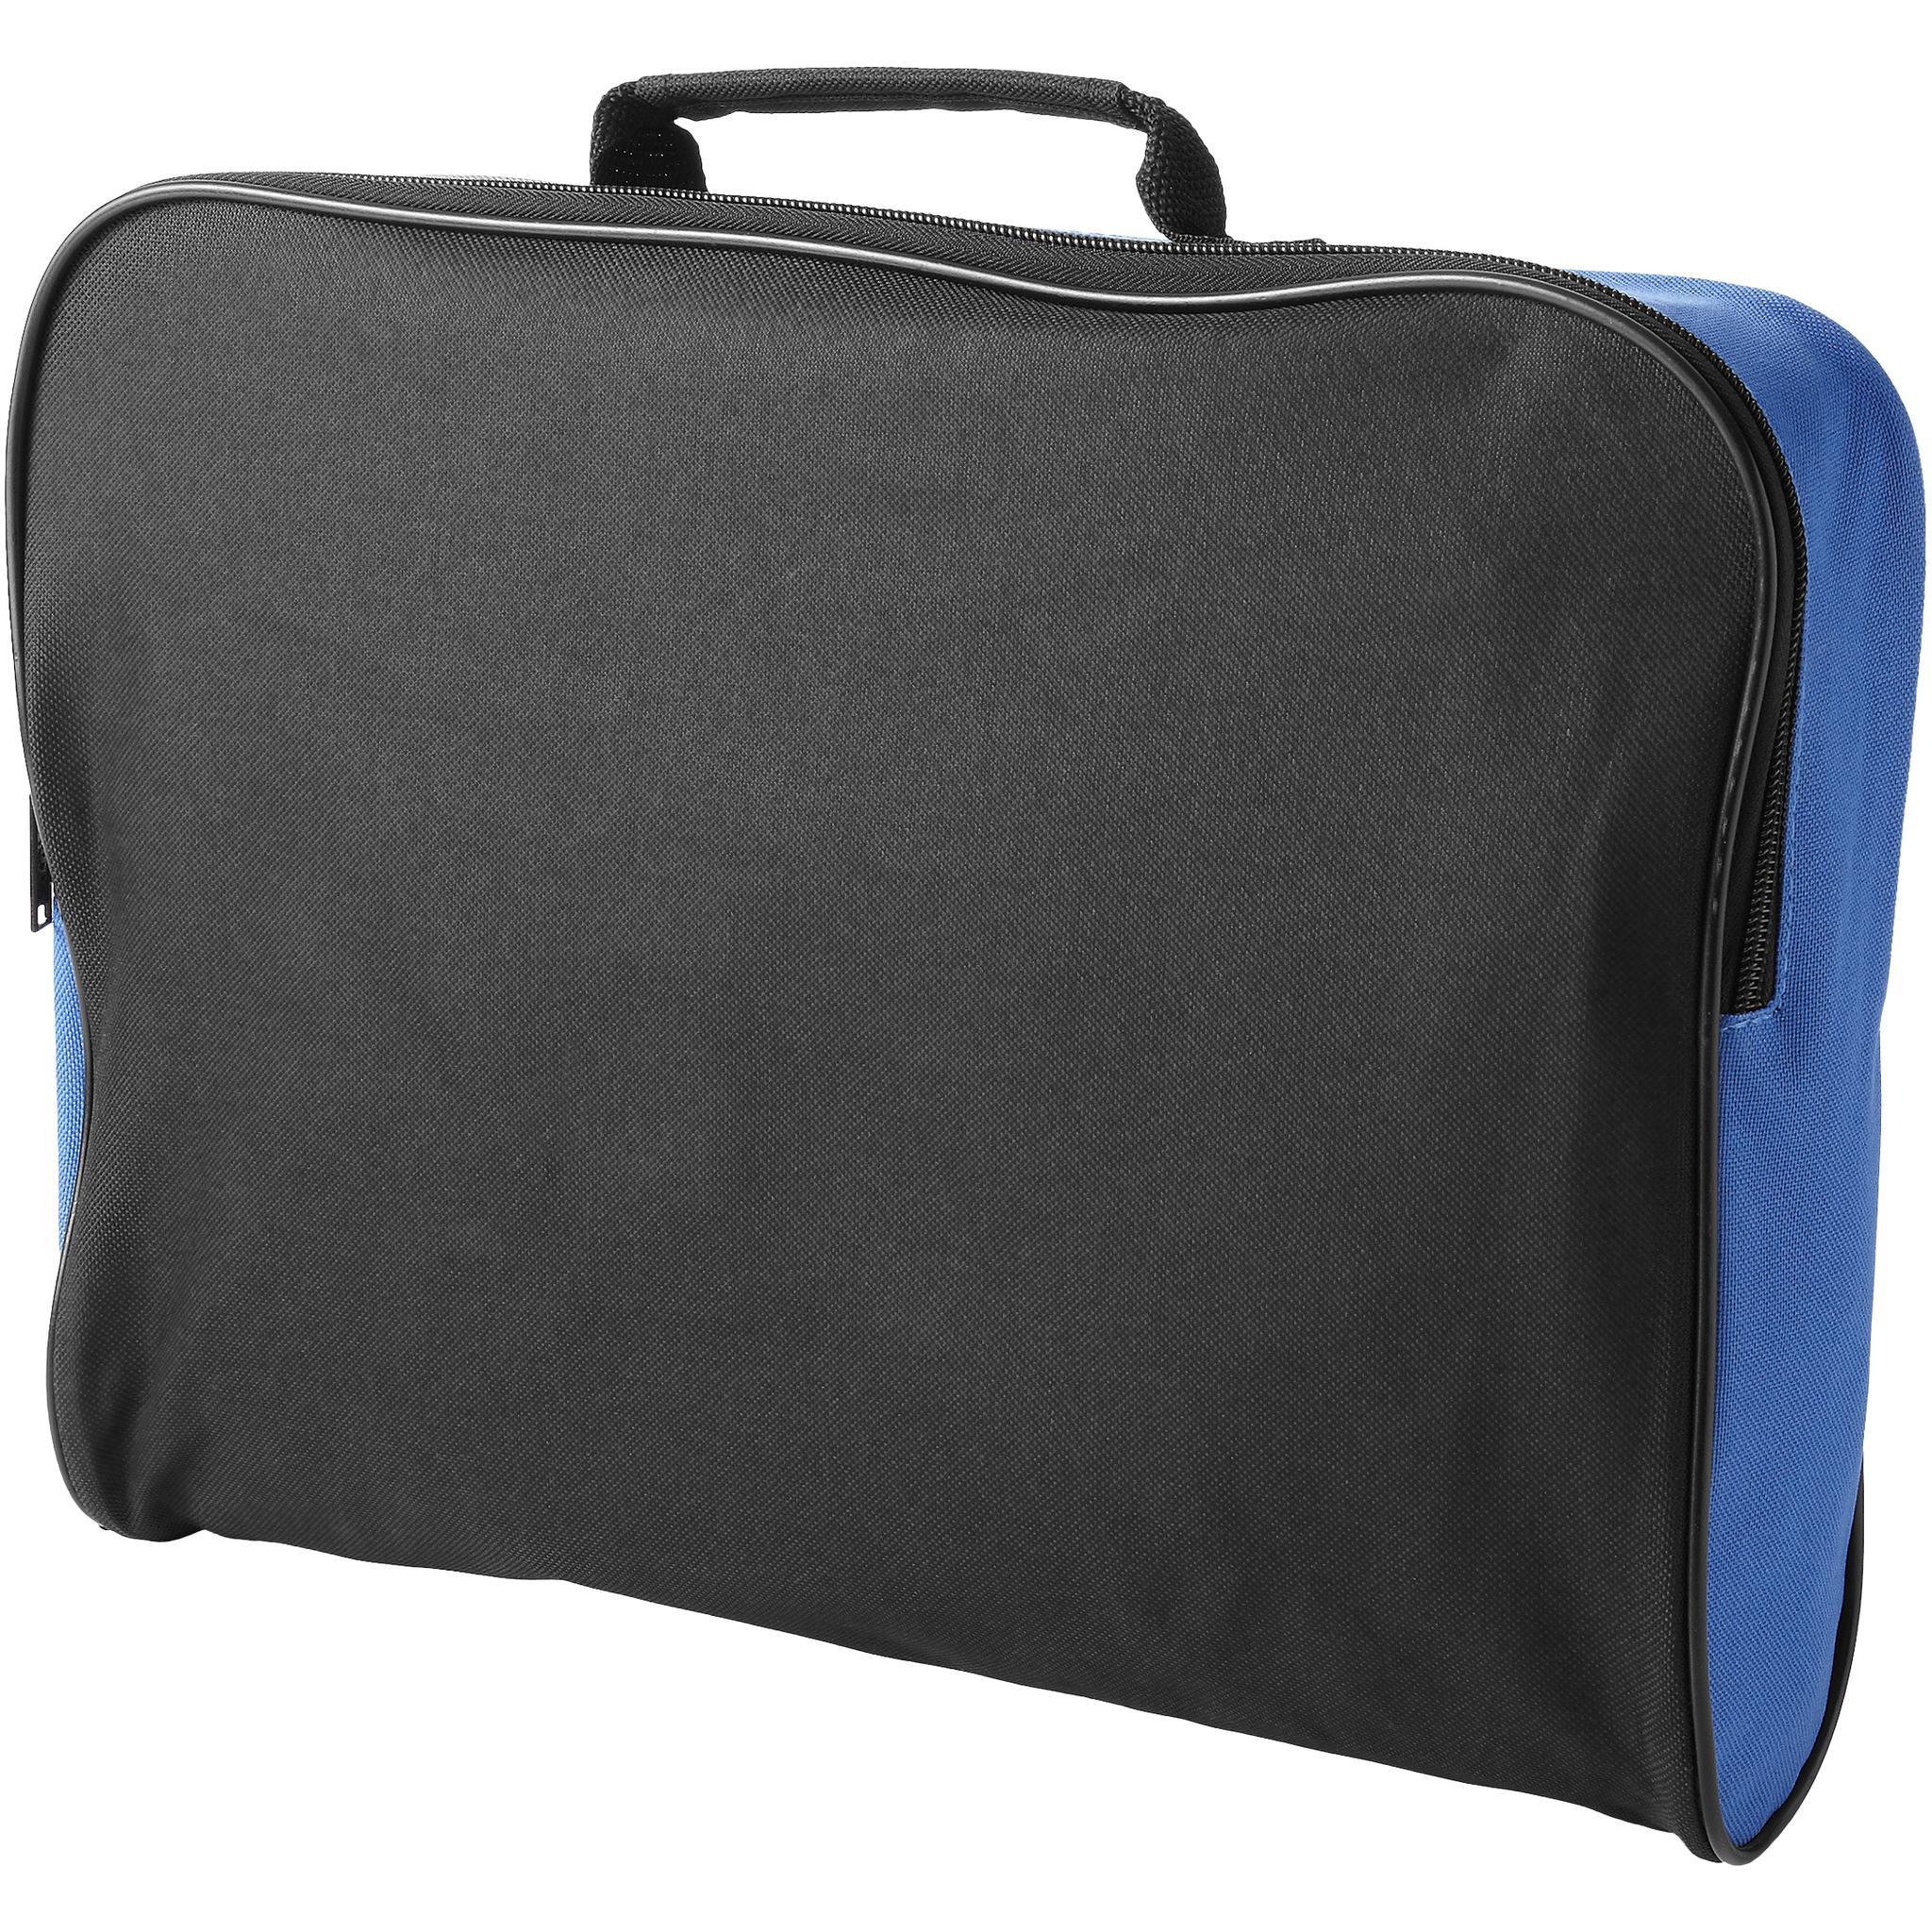 Bullet Florida Conference Bag (Solid Black/Royal Blue) (40 x 8 x 27cm)